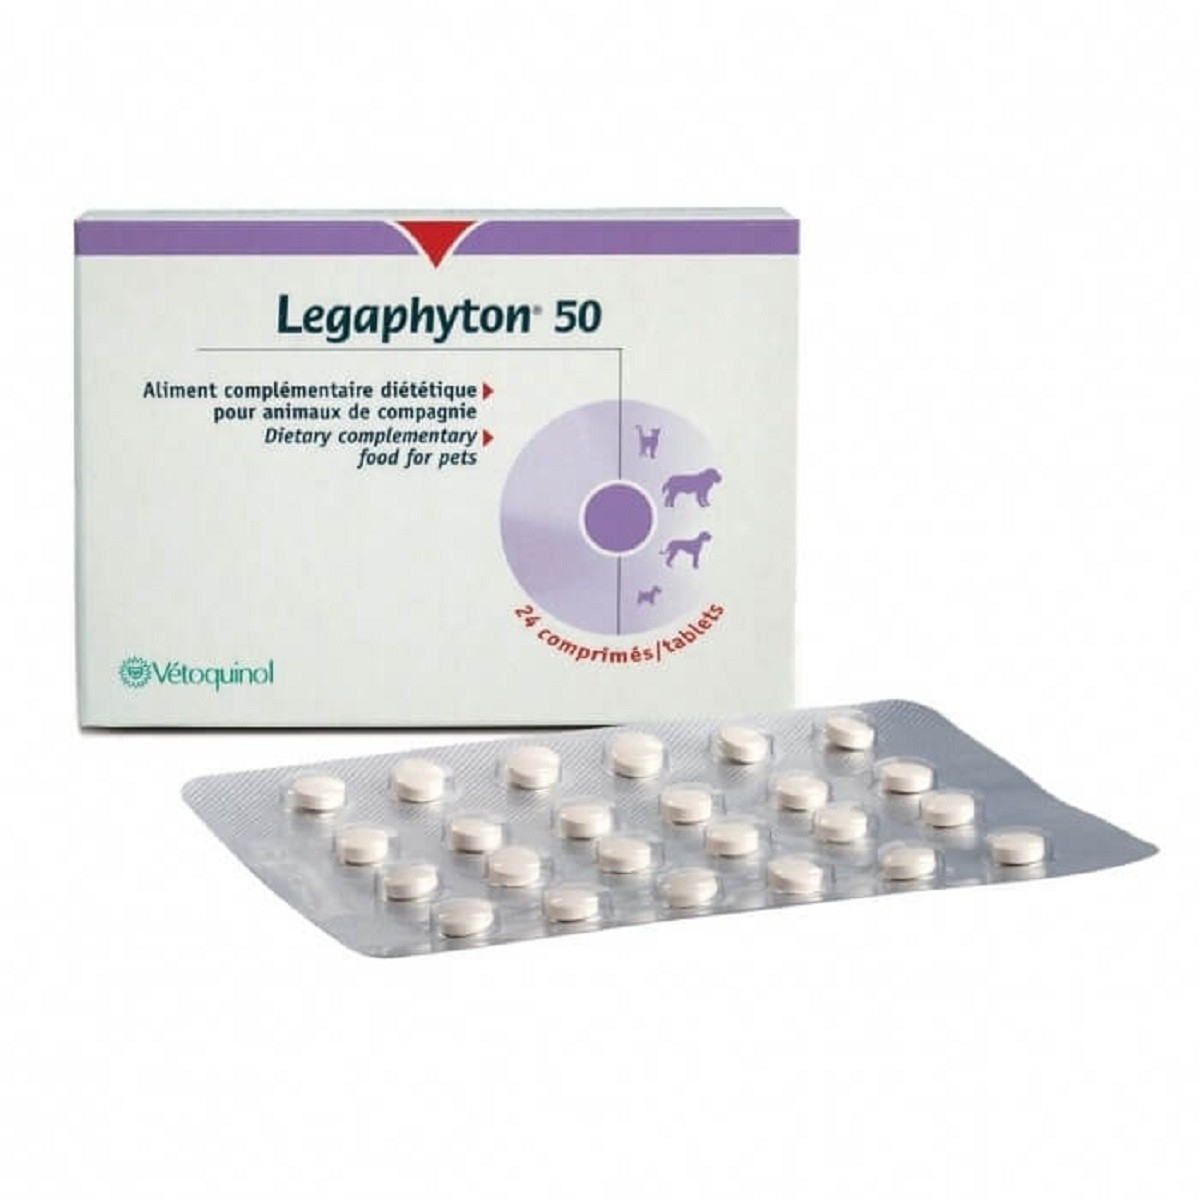 Legaphyton 50 Vetoquinol Complement für leberversagen bei Hunden und Katzen